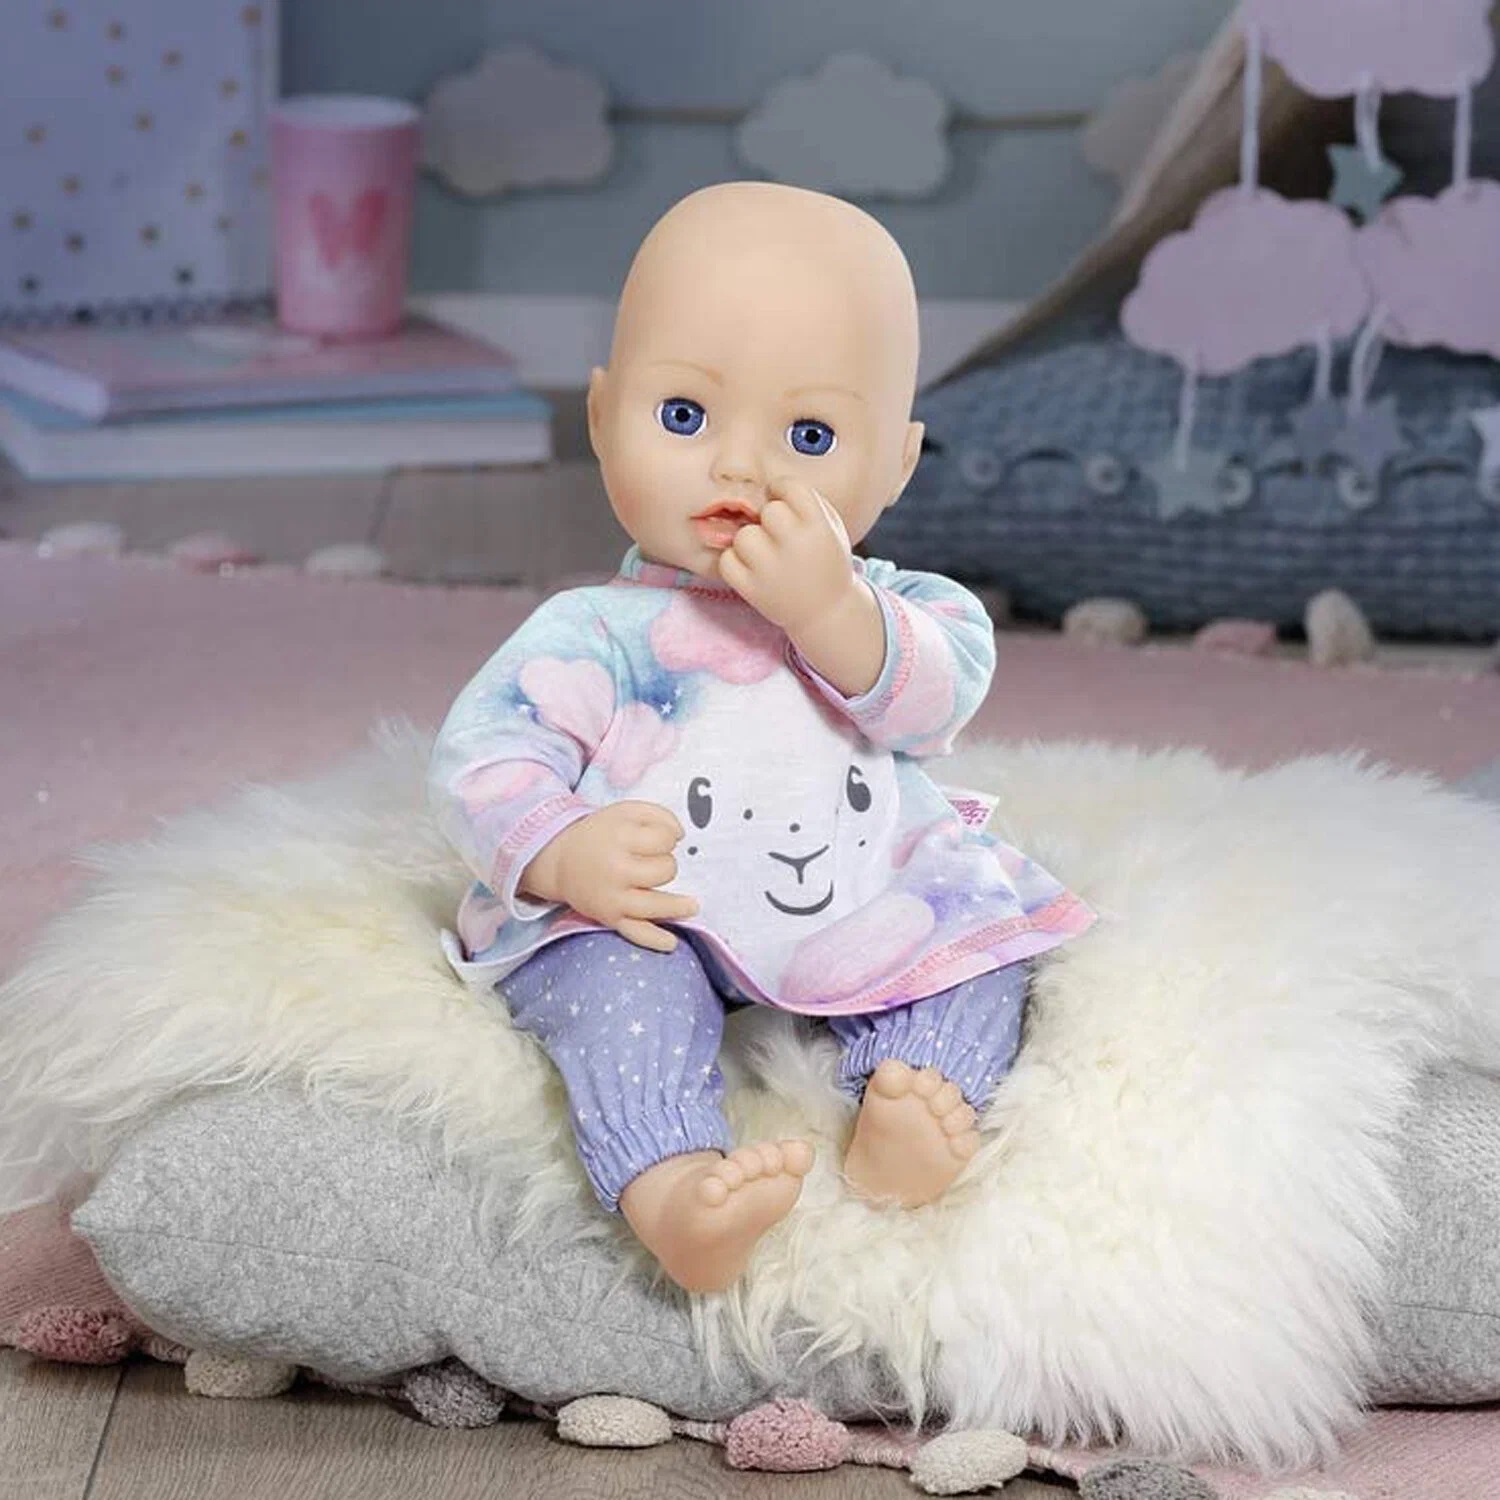 Одежда Zapf Creation Baby Annabell 703-199 Бэби Аннабель для сладких снов, 43 см